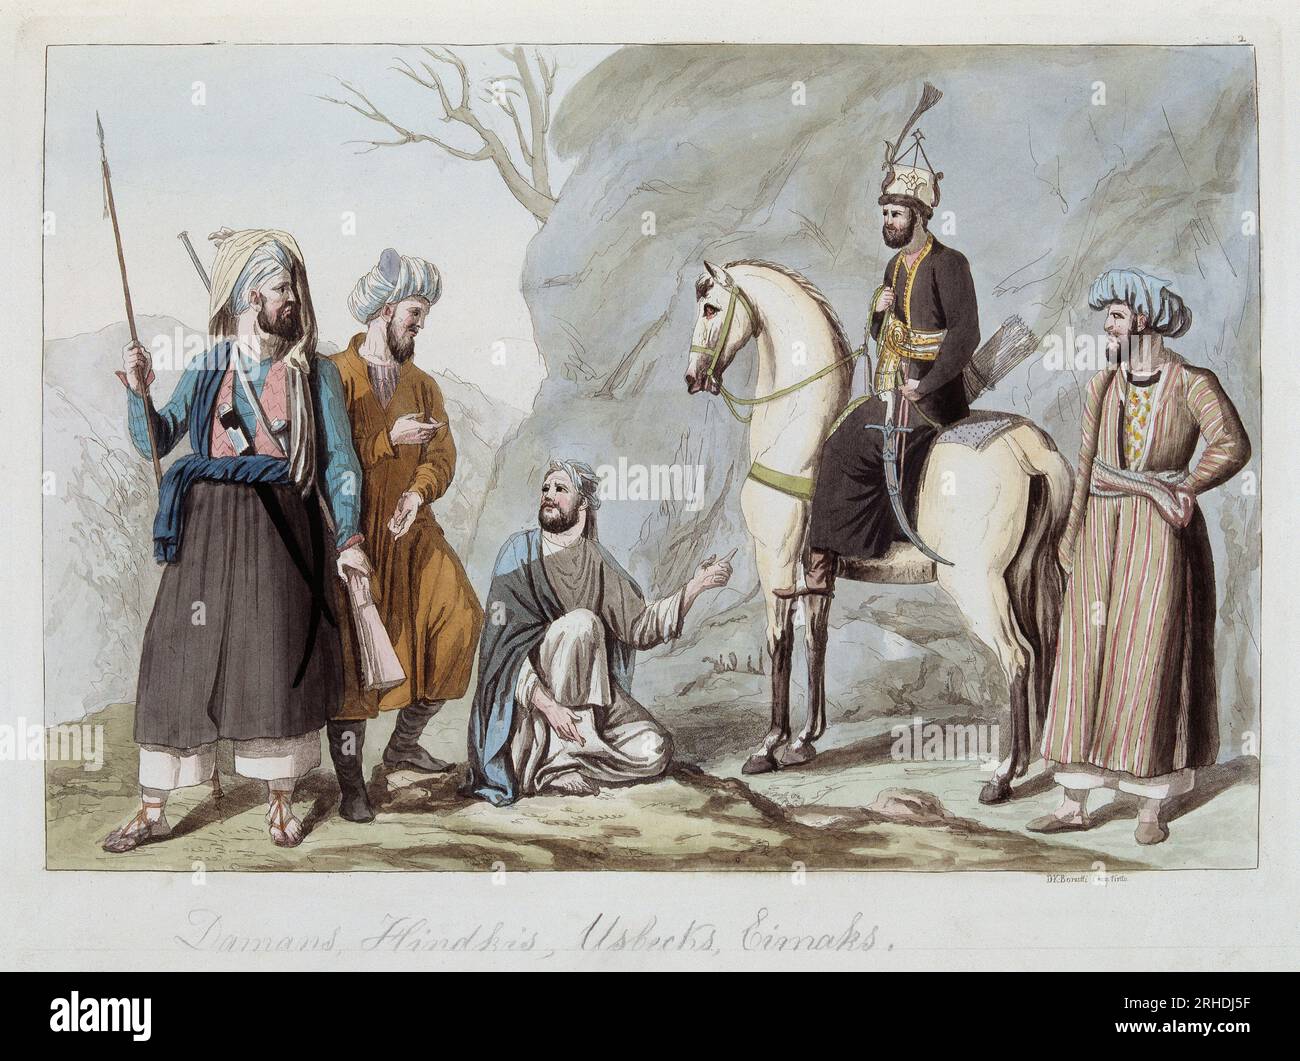 Damans, Hindkis, Ouzbeks et Eimaks d'Afghanistan - in "Le costume ancien et modern", wie Ferrario, 1819-20 Stockfoto